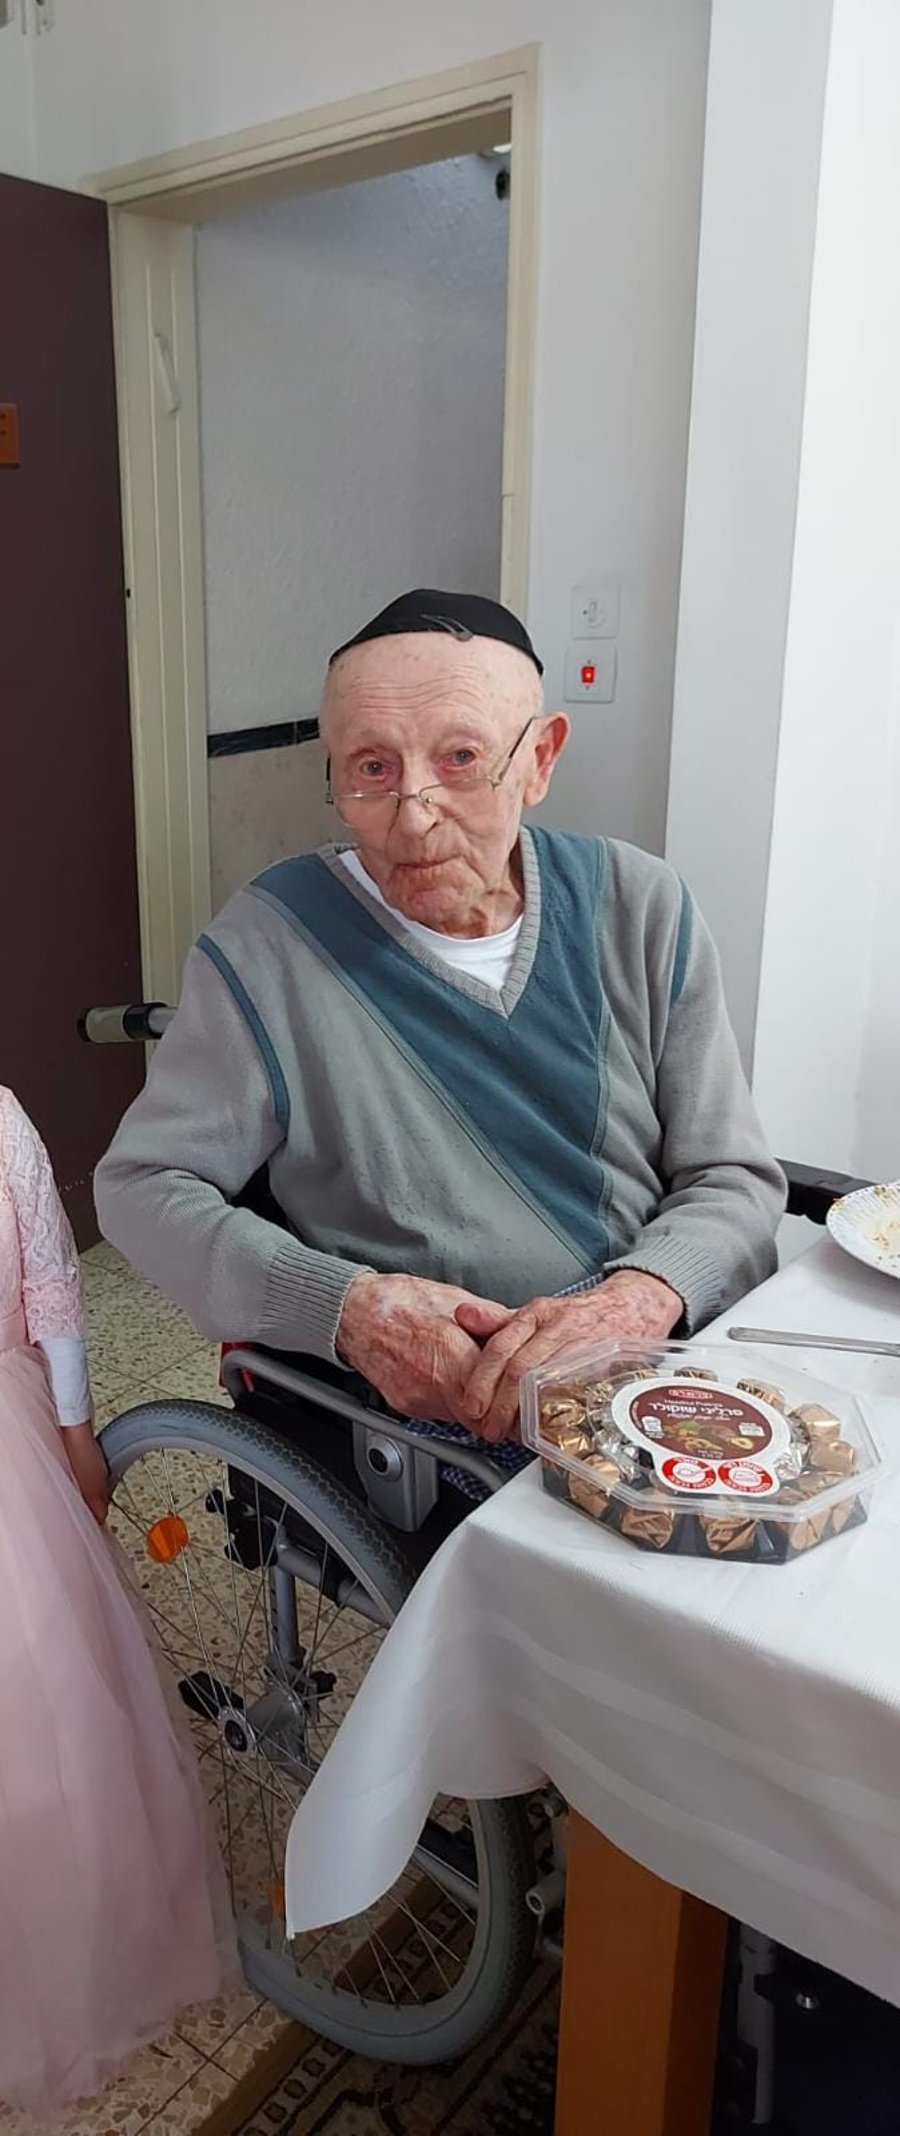 בגיל 102 | הלך לעולמו הגבאי המיתולוגי של בית הכנסת הגדול בבני ברק